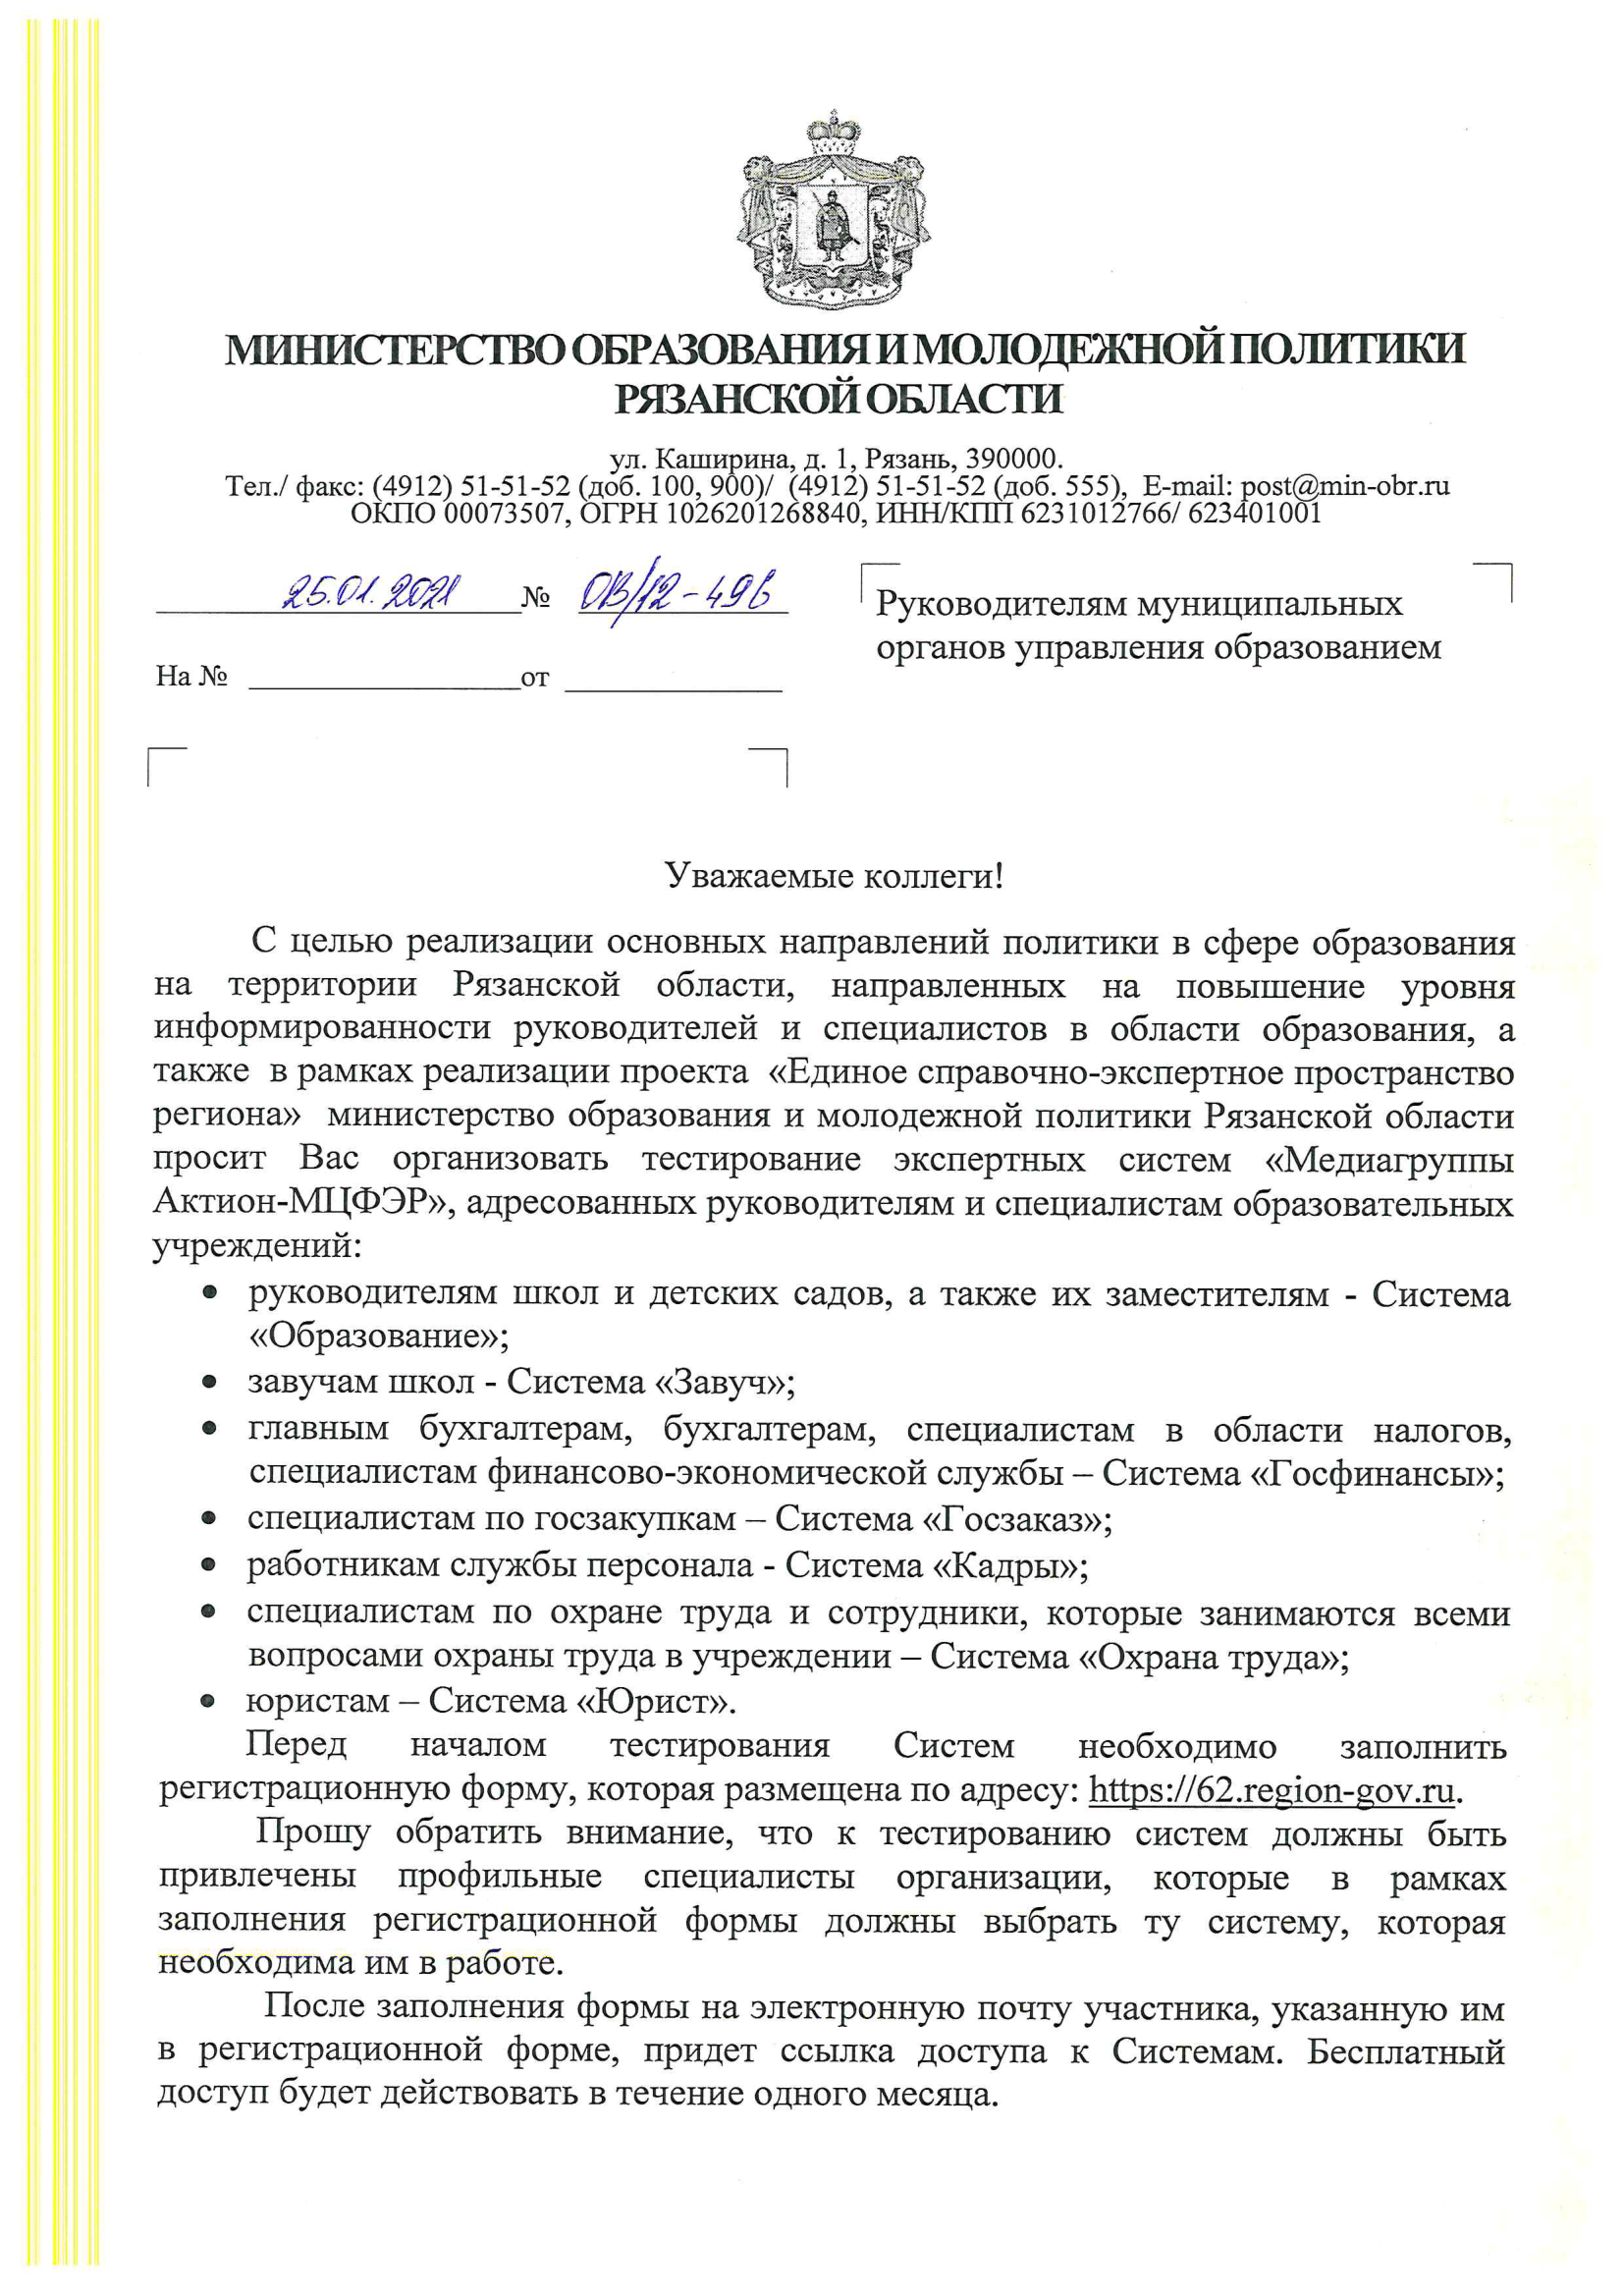 Письмо Министерства образования и молодежной политики Рязанской области №ОВ/12-496 от 25.01.2021 г.